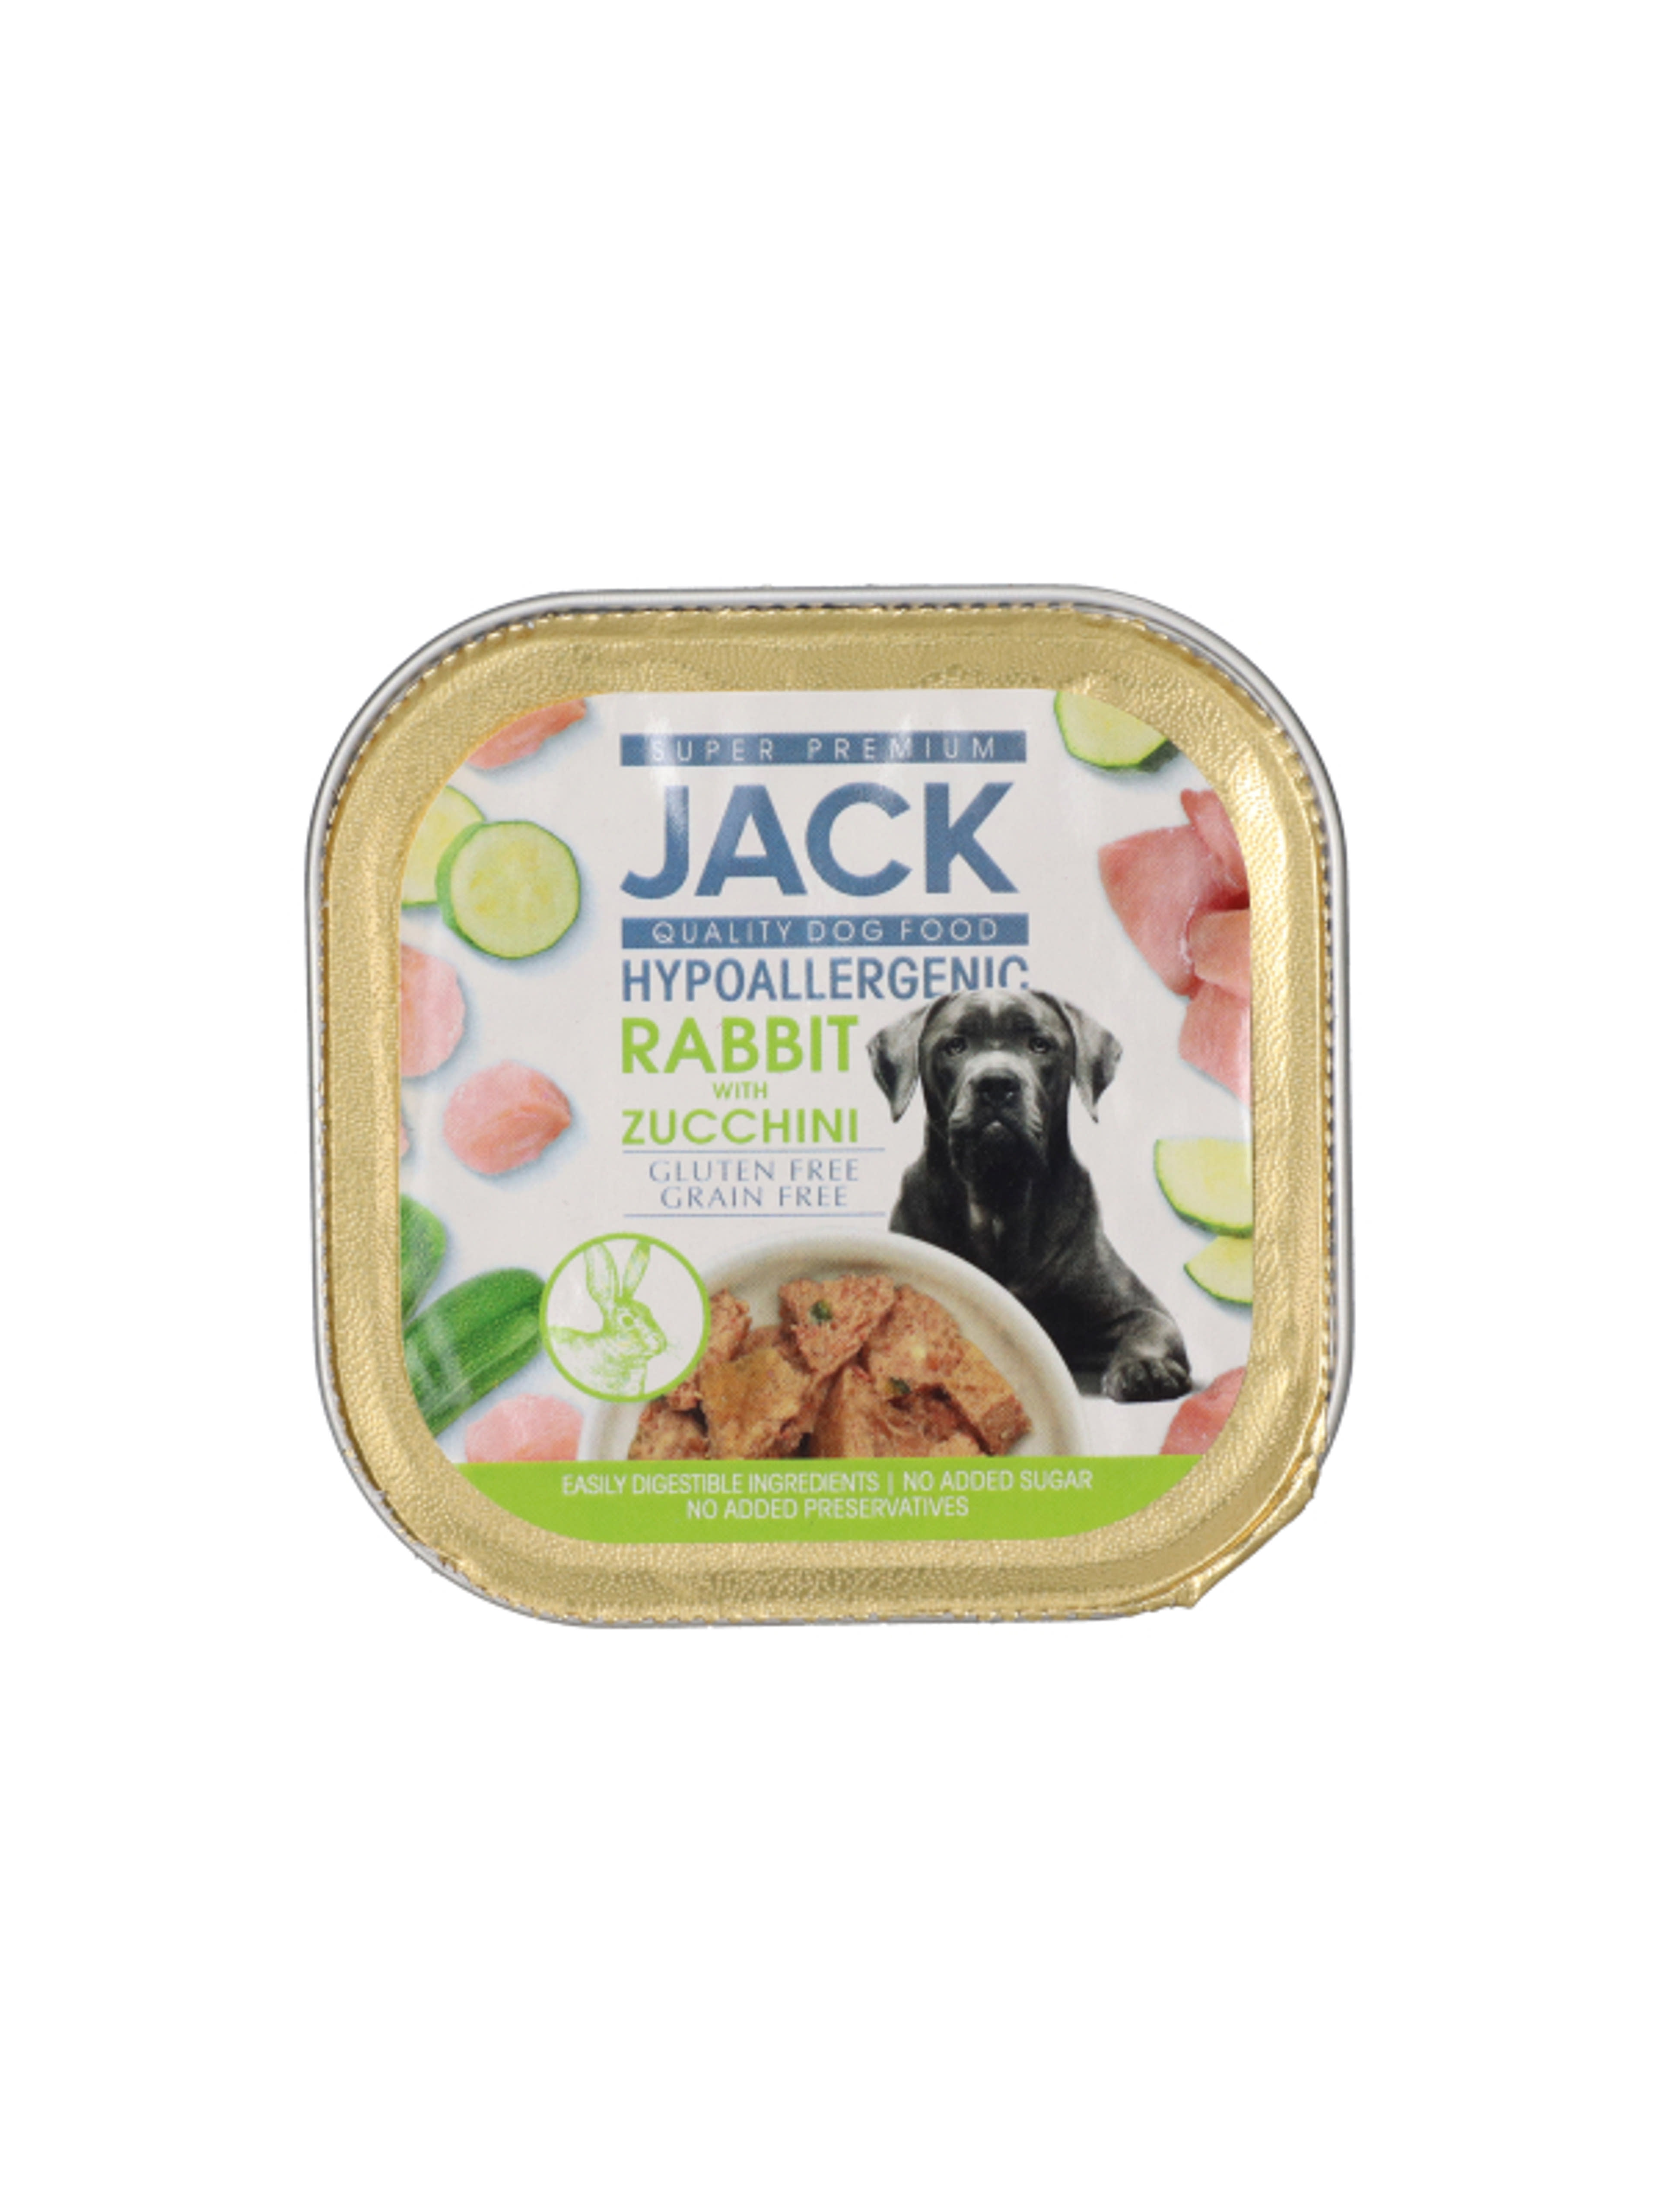 Jack Super Premium alutál nyúlhús cukkinivel pástétom hipoallergén - 150 g